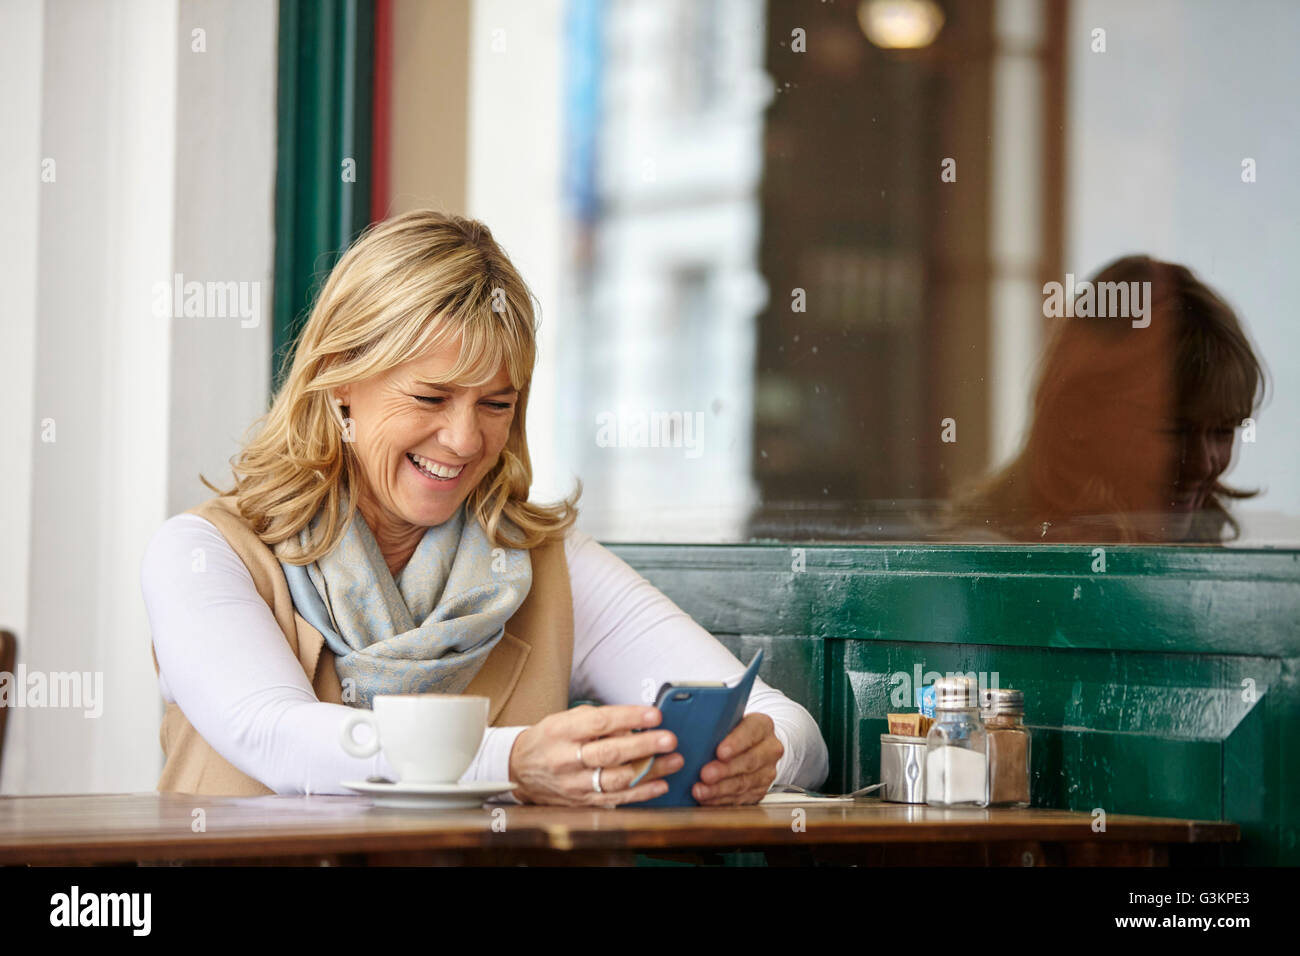 Reife Frau lesen Smartphone Text am Bürgersteig Café-Tisch Stockfoto